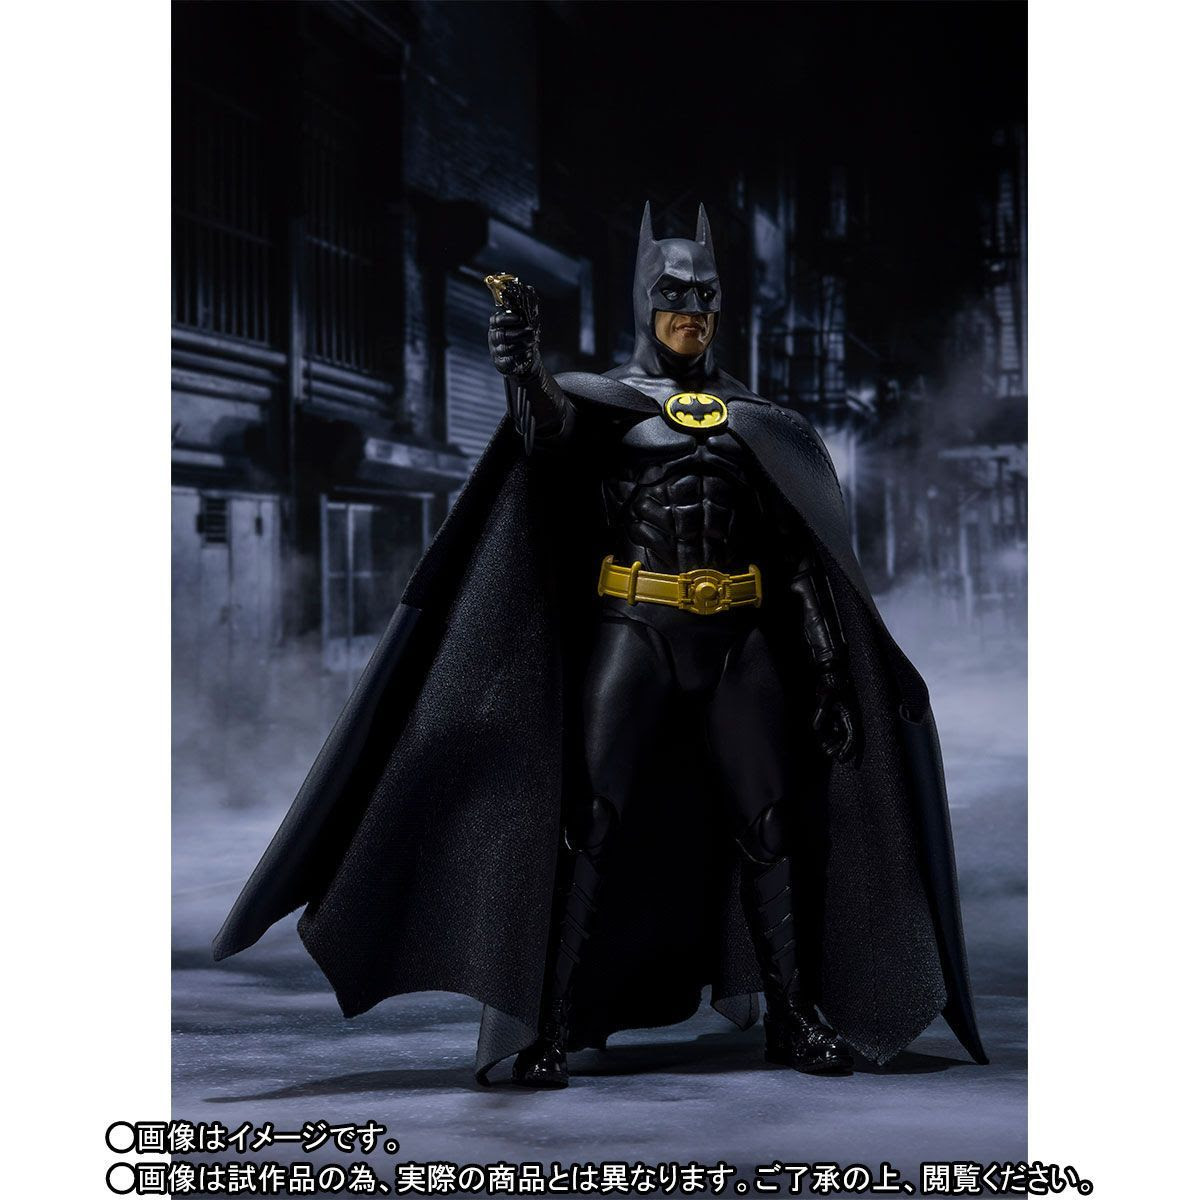 Image of Batman 1989 Batman SH Figuarts Action Figure - OCTOBER 2020